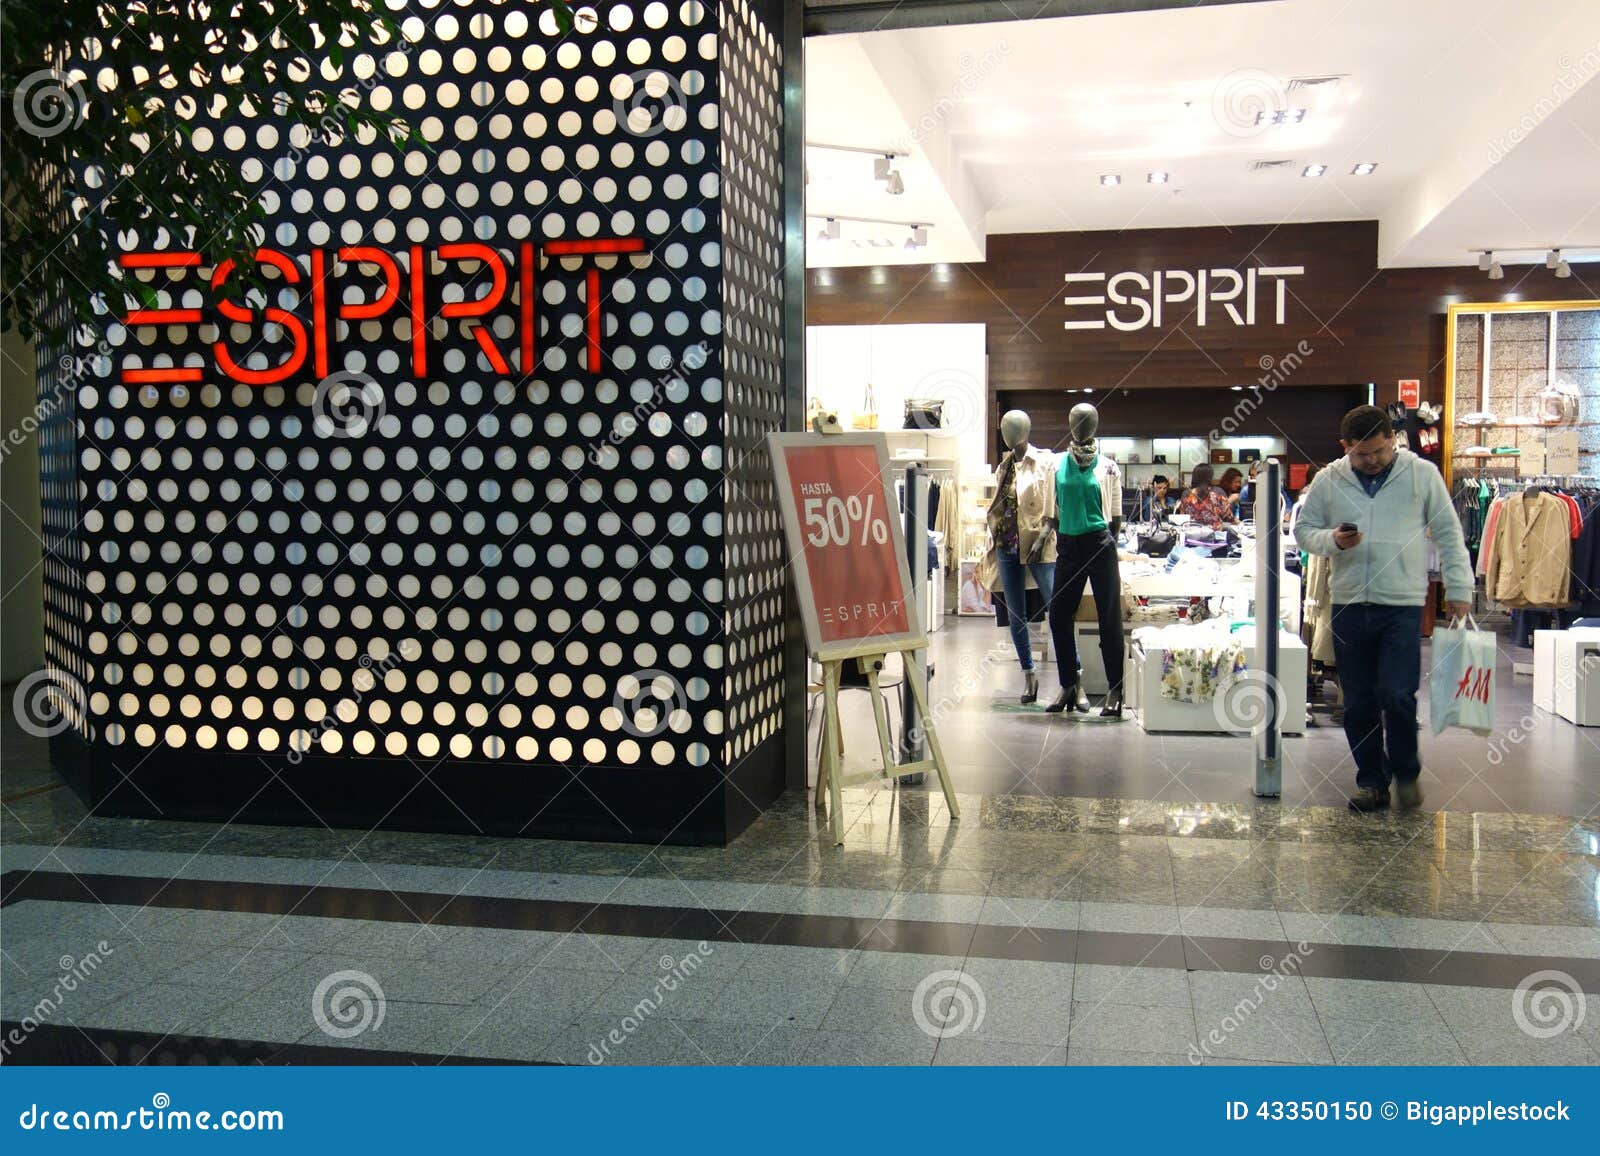 Esprit editorial Image of retail, santiago, 43350150